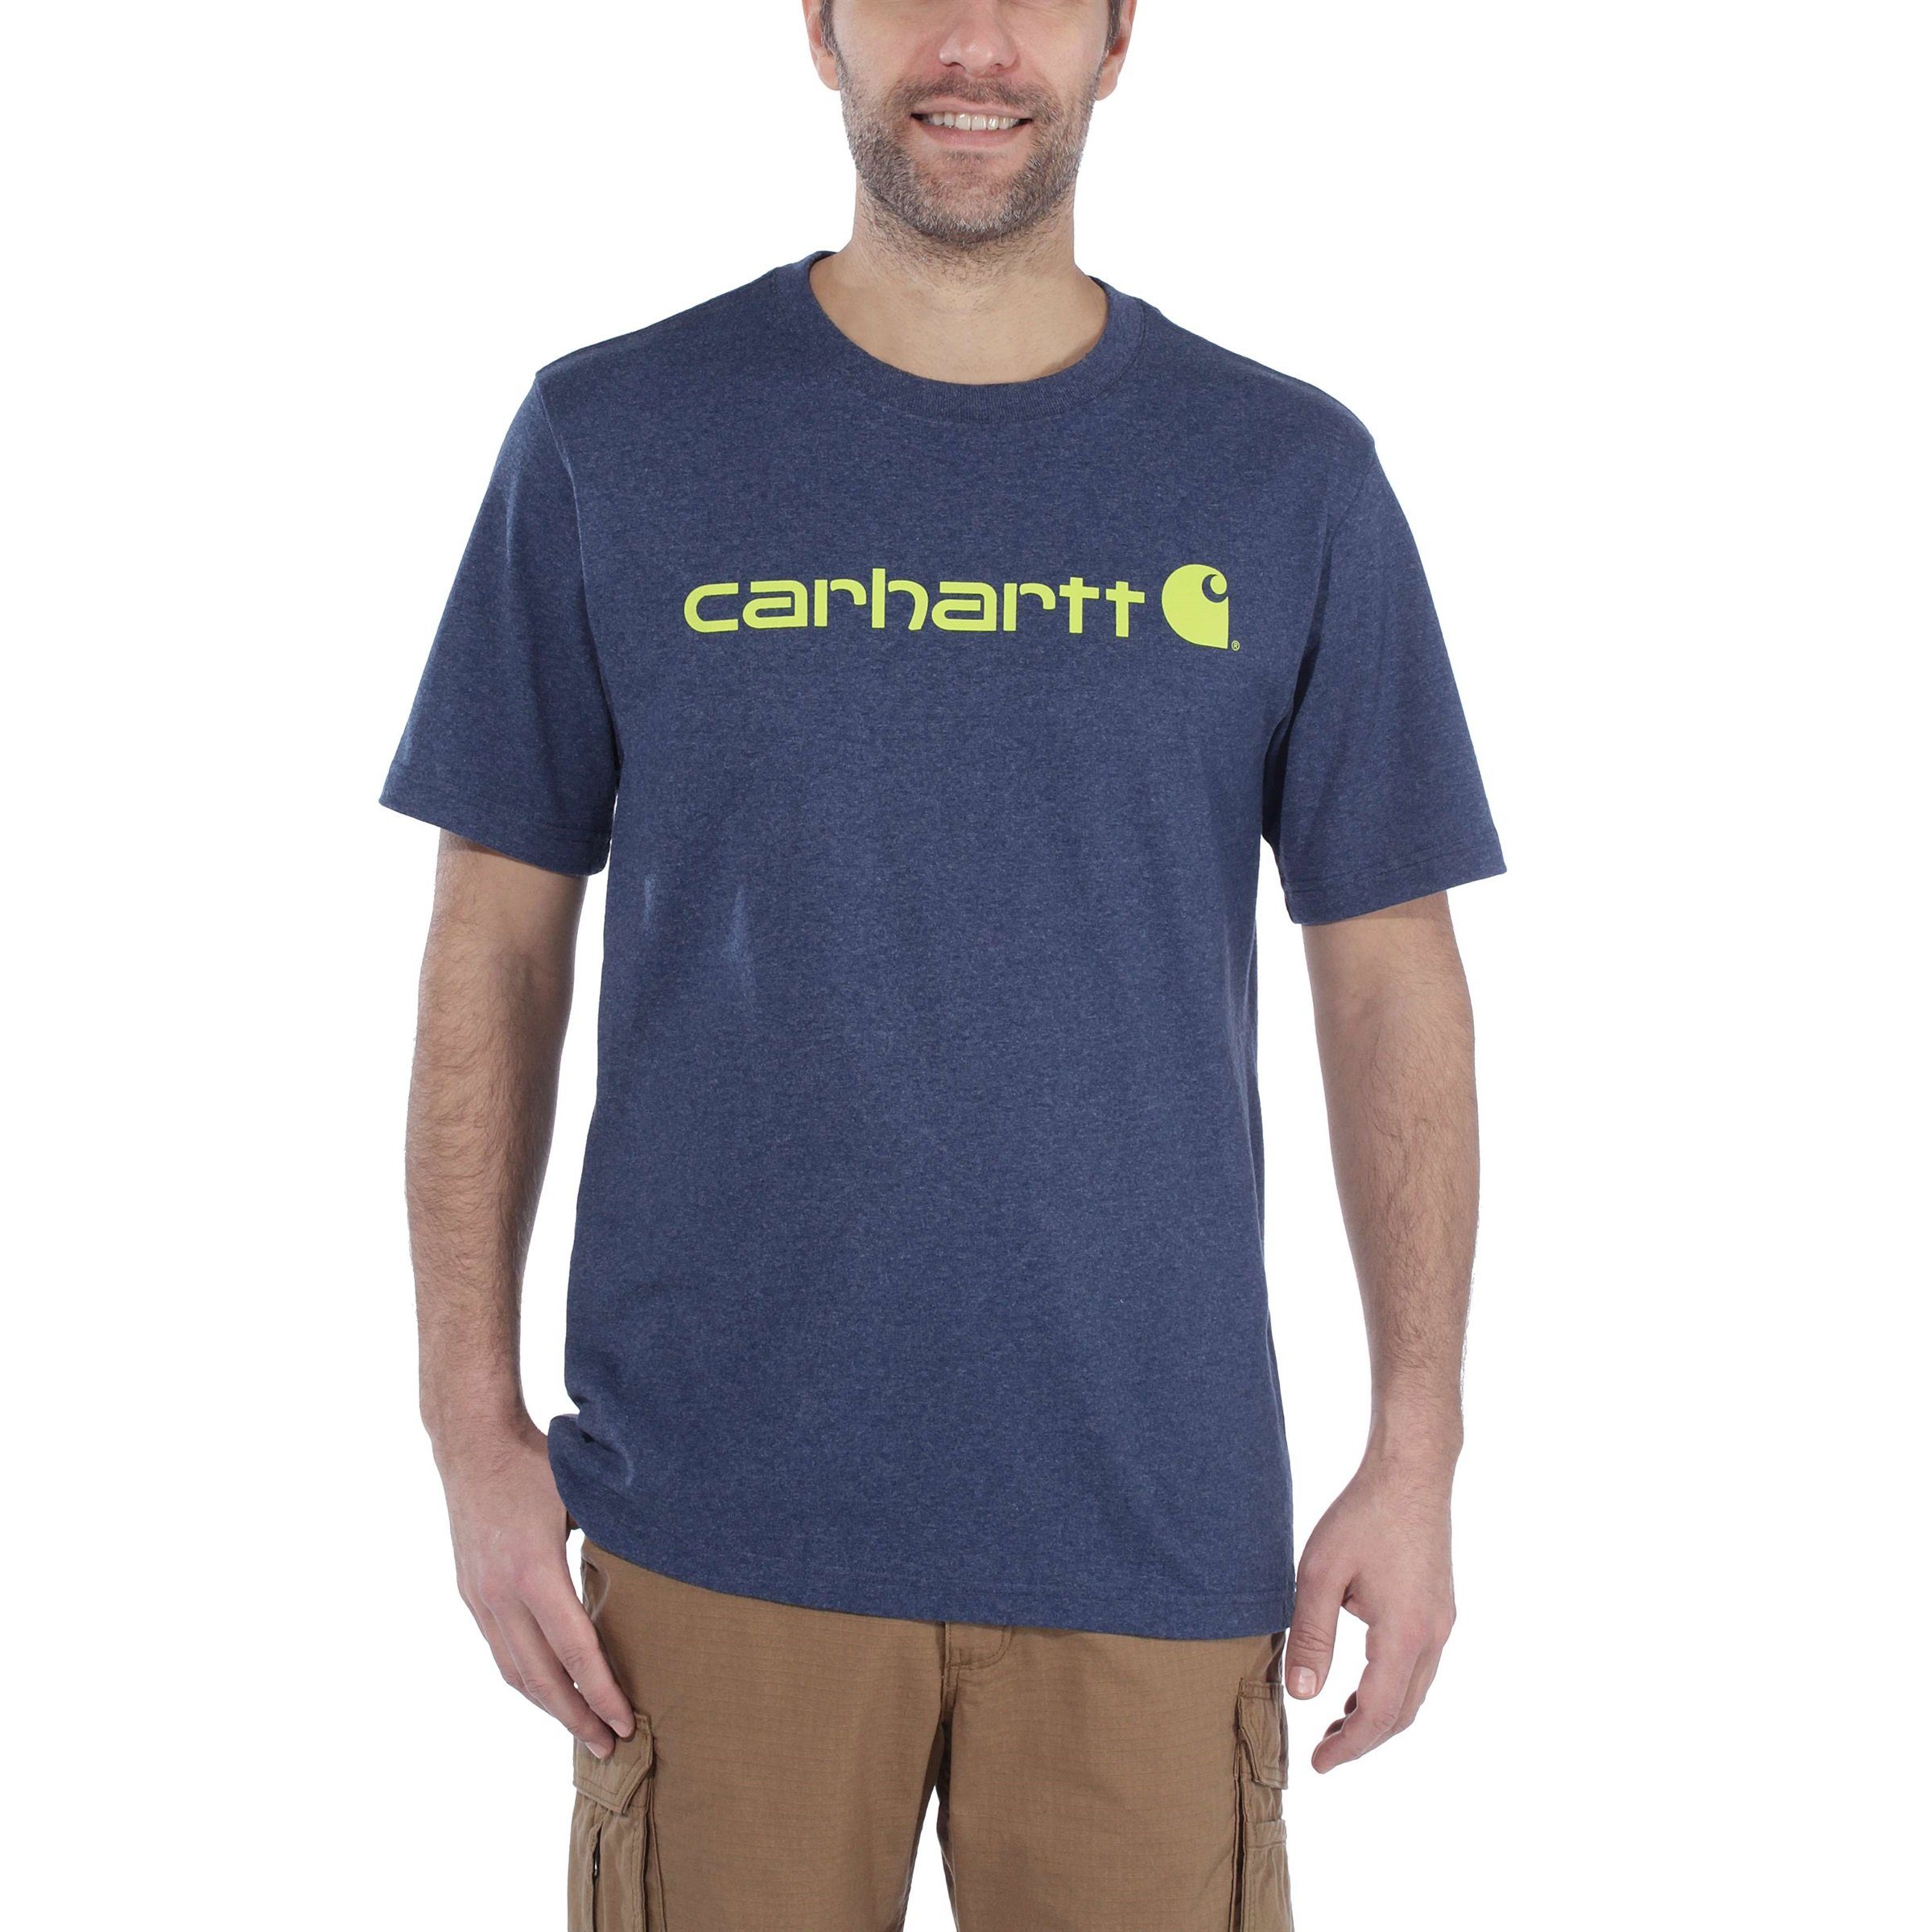 Carhartt T-Shirt Logo cobalt Carhartt Relaxed Fit Short-Sleeve blue dark Adult T-Shirt Graphic Herren Heavyweight heather